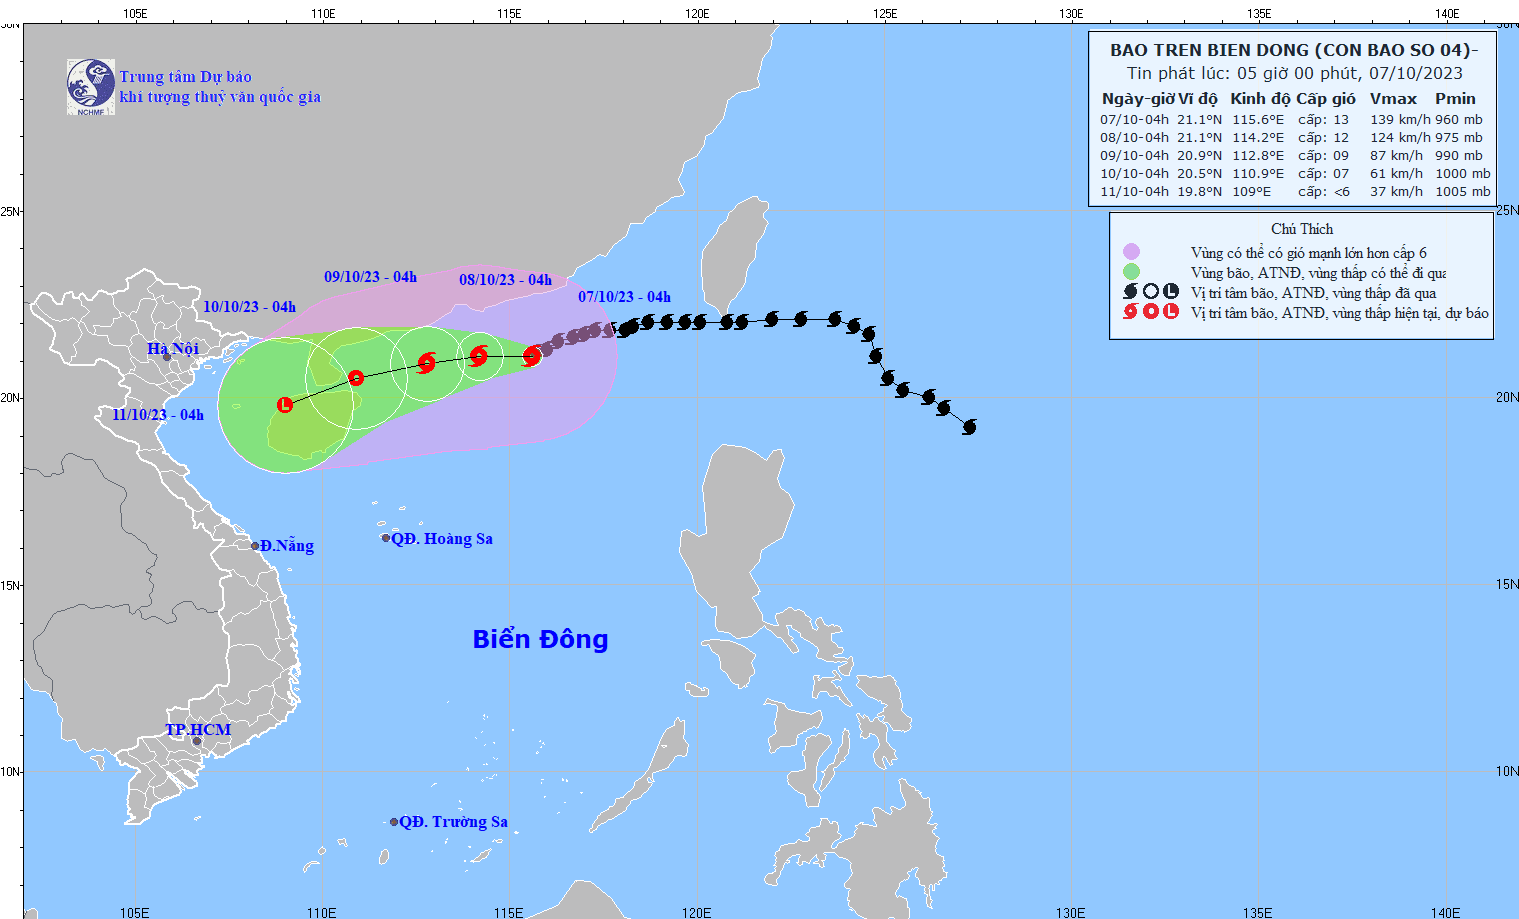 Thông tin mới nhất về Bão số 4 - bão Koinu ít khả năng ảnh hưởng đất liền nước ta